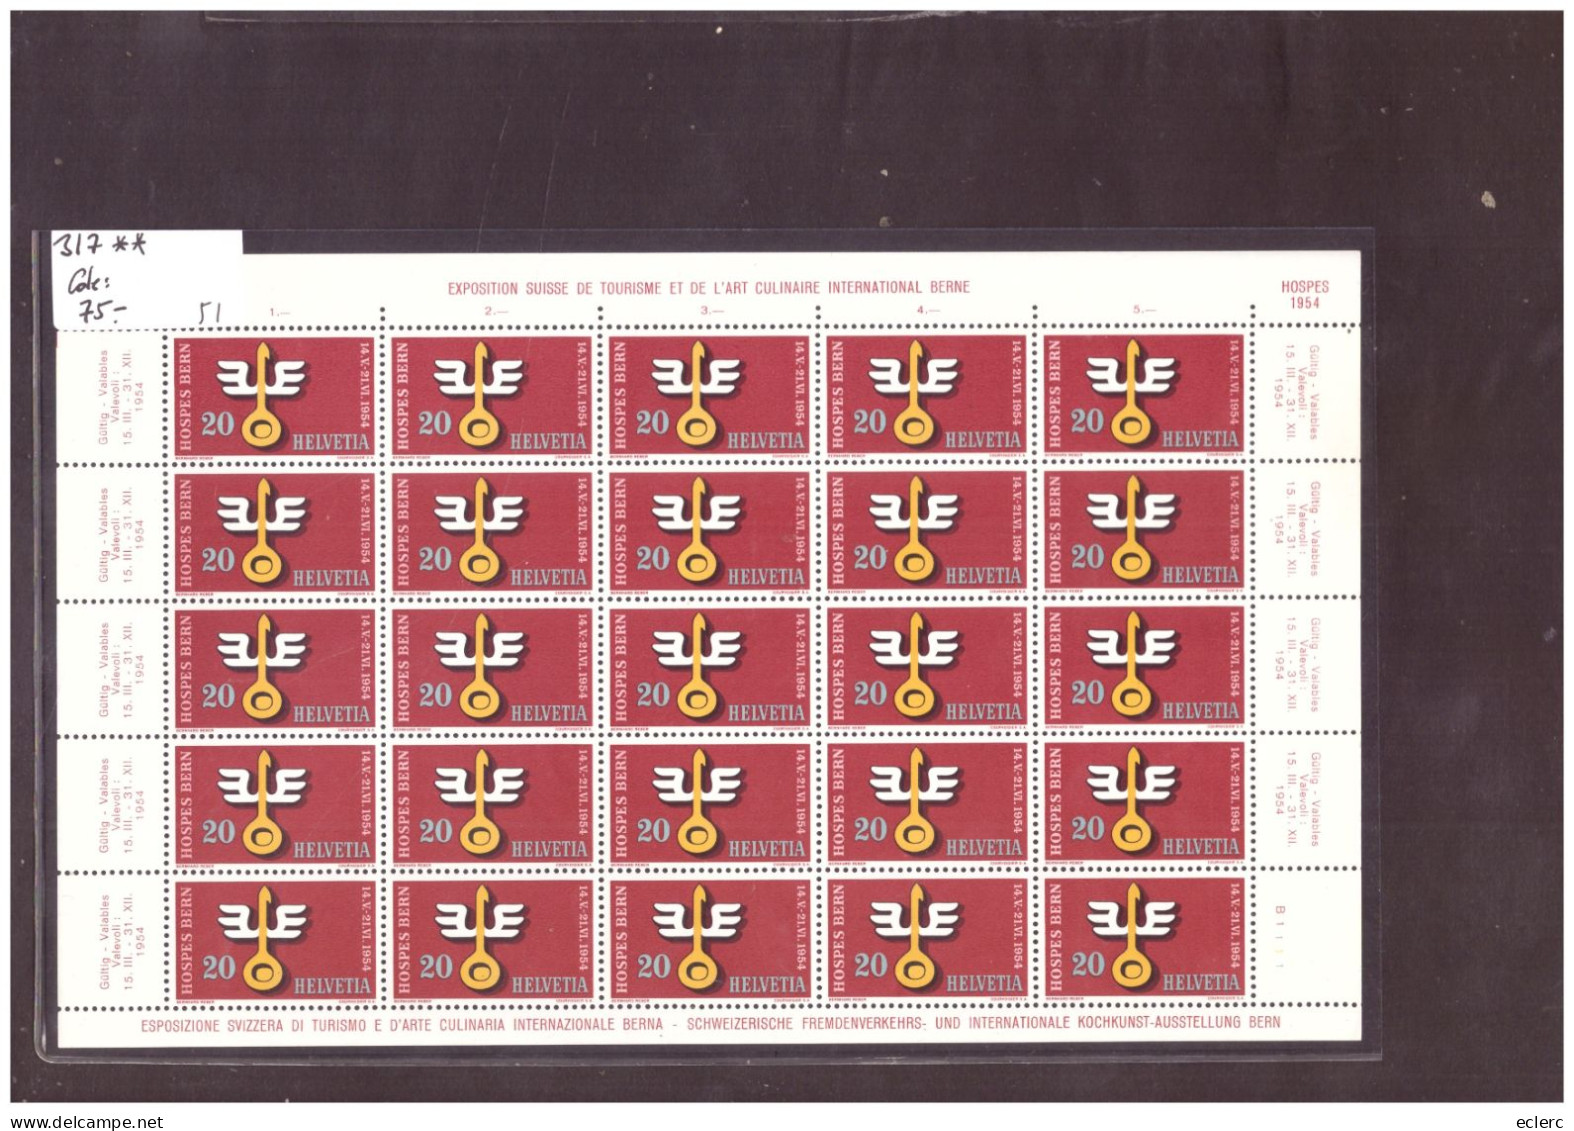 FEUILLE COMPLETE No 317  EN PARFAIT ETAT - HOSPES BERN 1954 - COTE: 75.- - Blocks & Kleinbögen